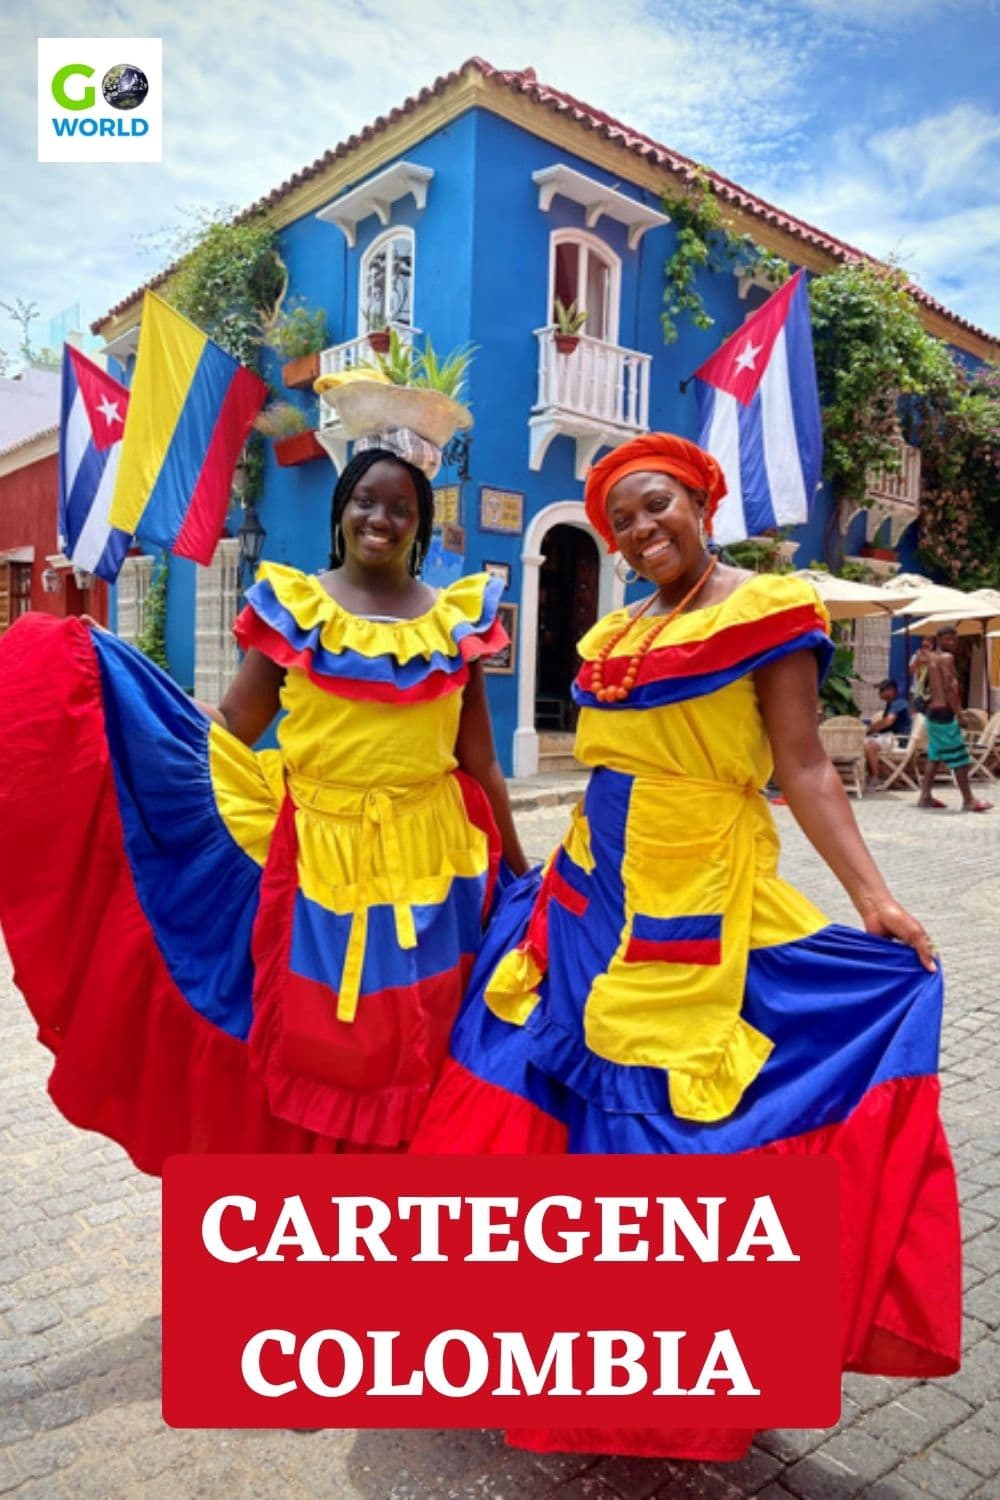 Colorida Cartagena. Mujeres en pose de traje tradicional por $1 a lo largo de las calles de colores pastel